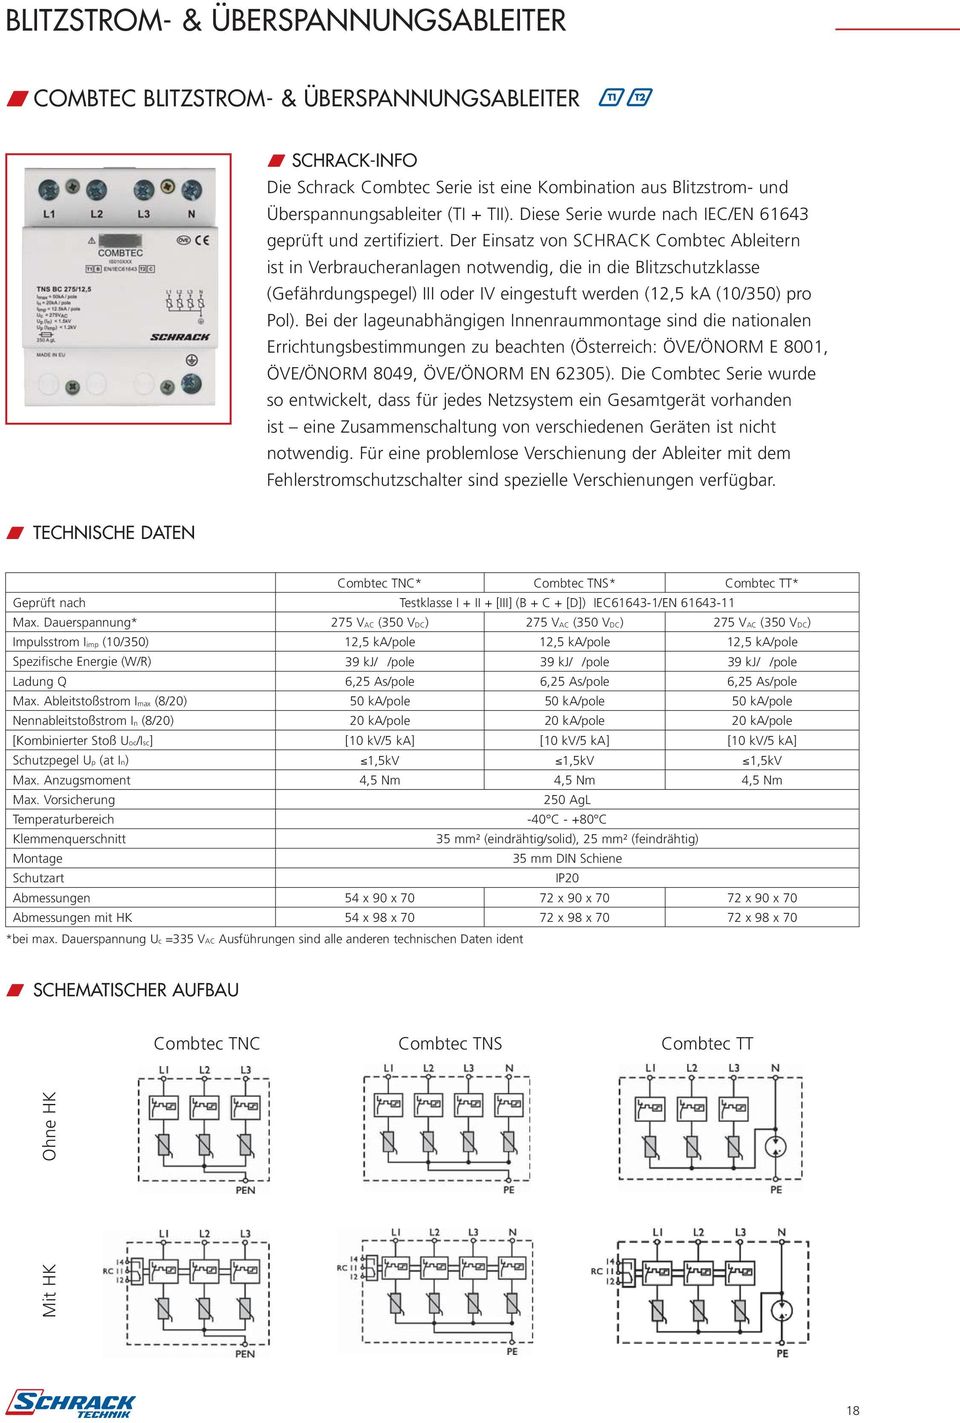 Der Einsatz von SCHRACK Combtec Ableitern ist in Verbraucheranlagen notwendig, die in die Blitzschutzklasse (Gefährdungspegel) III oder IV eingestuft werden (12,5 ka (10/350) pro Pol).